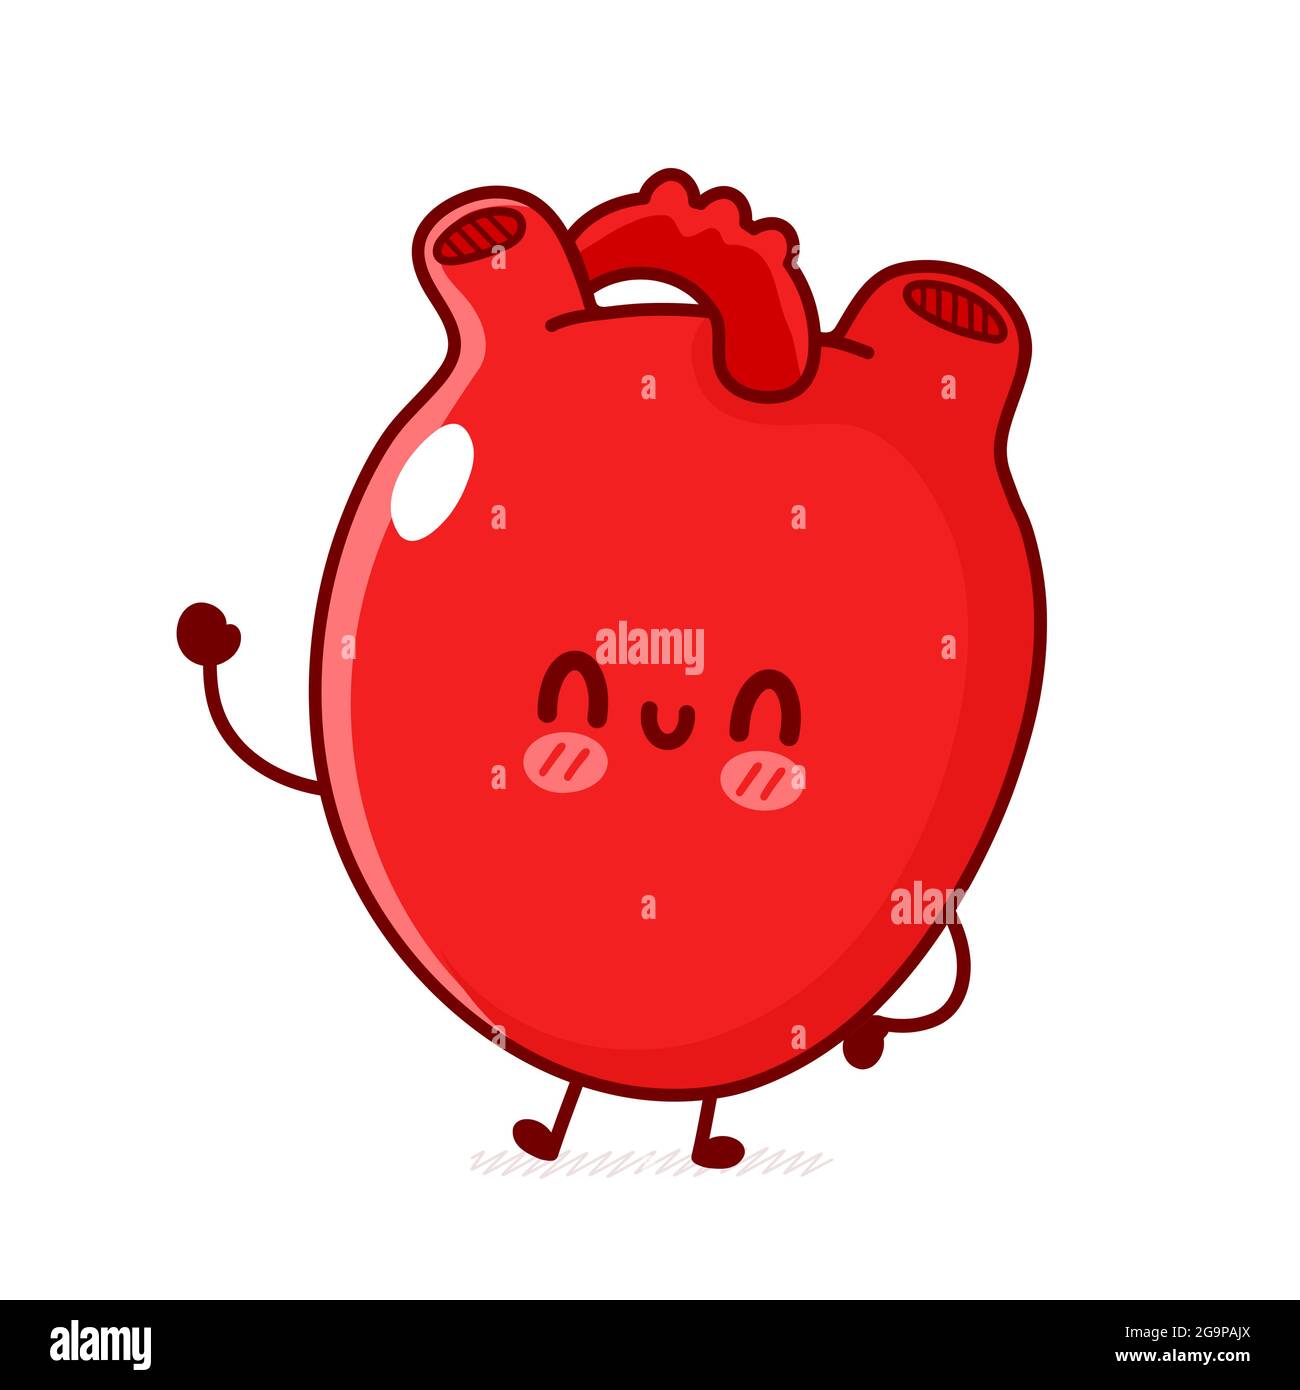 Carino divertente organo cuore umano. Vettore linea piatta doodle cartoon kawaii personaggio illustrazione logo icona. Isolato su sfondo bianco. Organo cuore umano, anatomia cartone animato mascotte concetto di carattere Illustrazione Vettoriale